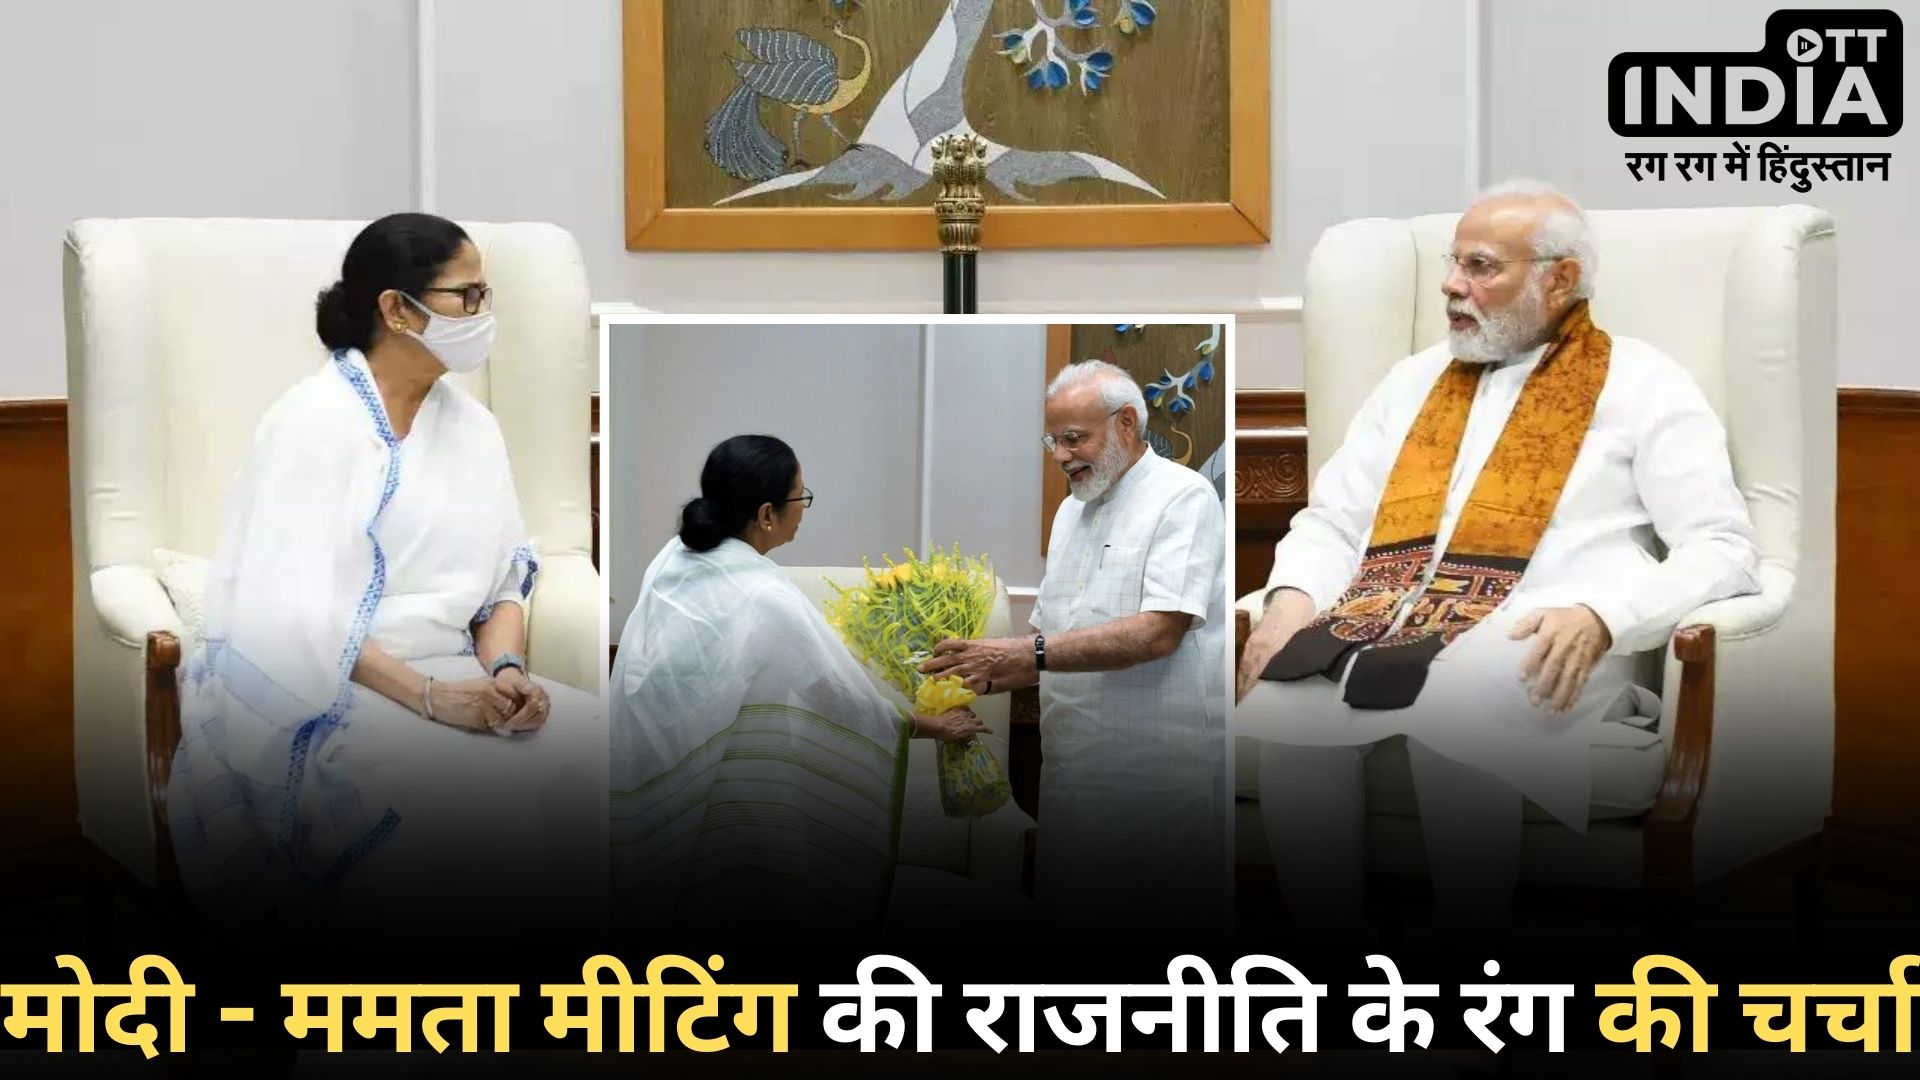 Modi-Mamata Meeting: प्रधानमंत्री से मिलीं ममता बनर्जी, जानें किस मुद्दे पर हुई चर्चा?